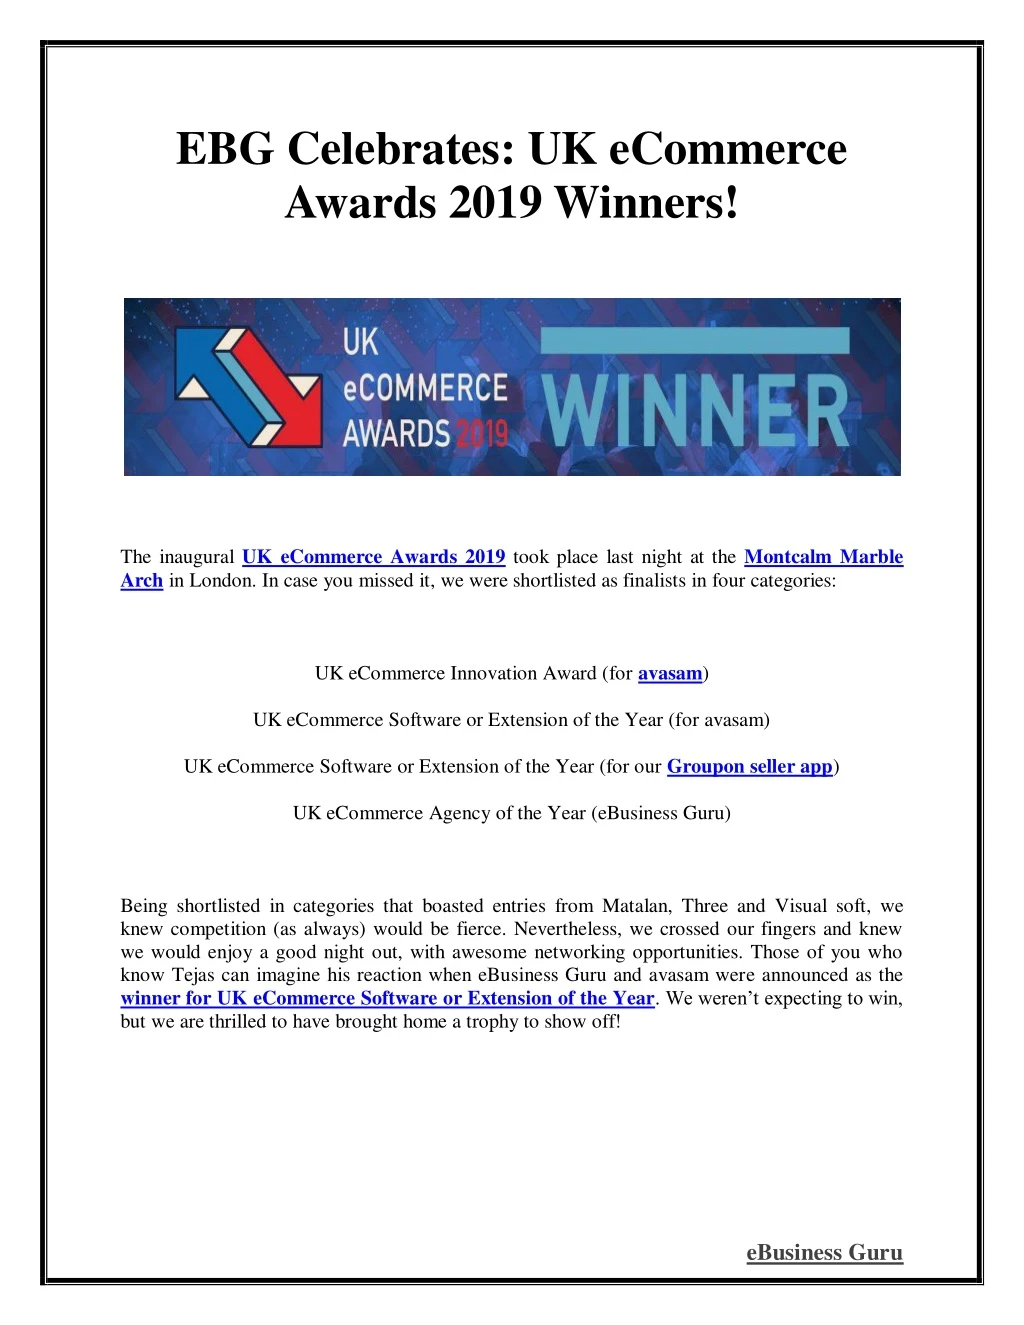 ebg celebrates uk ecommerce awards 2019 winners